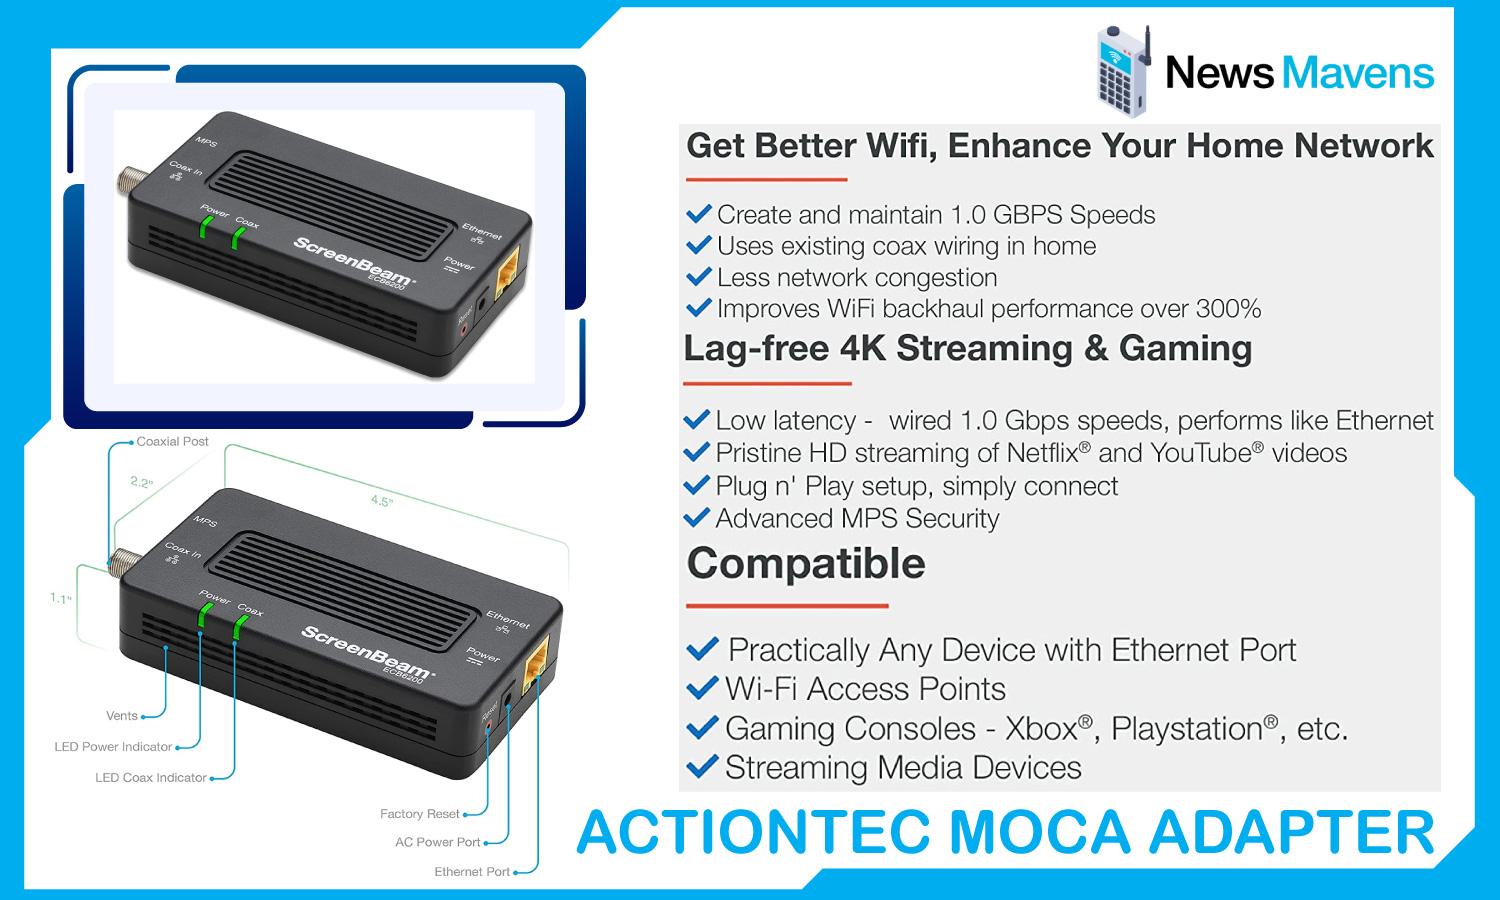 Actiontec MOCA Adapter